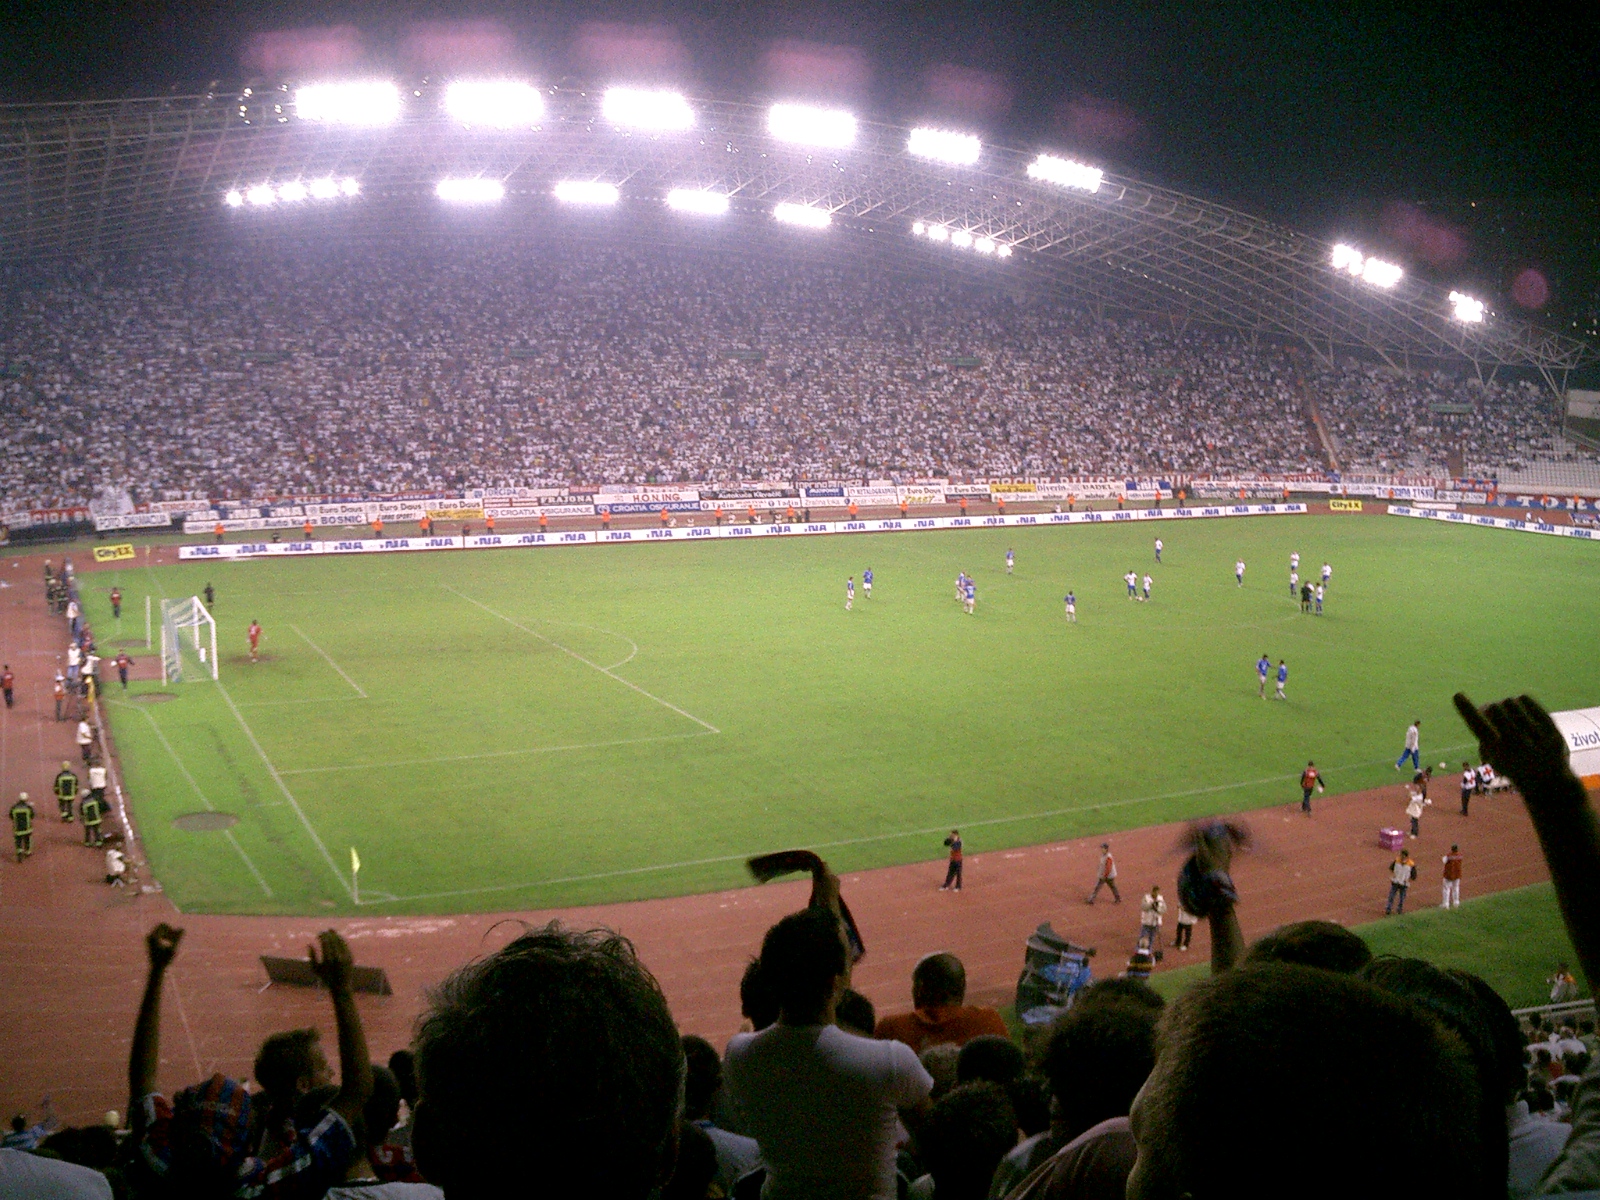 Split: Hajduk - Dinamo (Z) 1:0 • HNK Hajduk Split